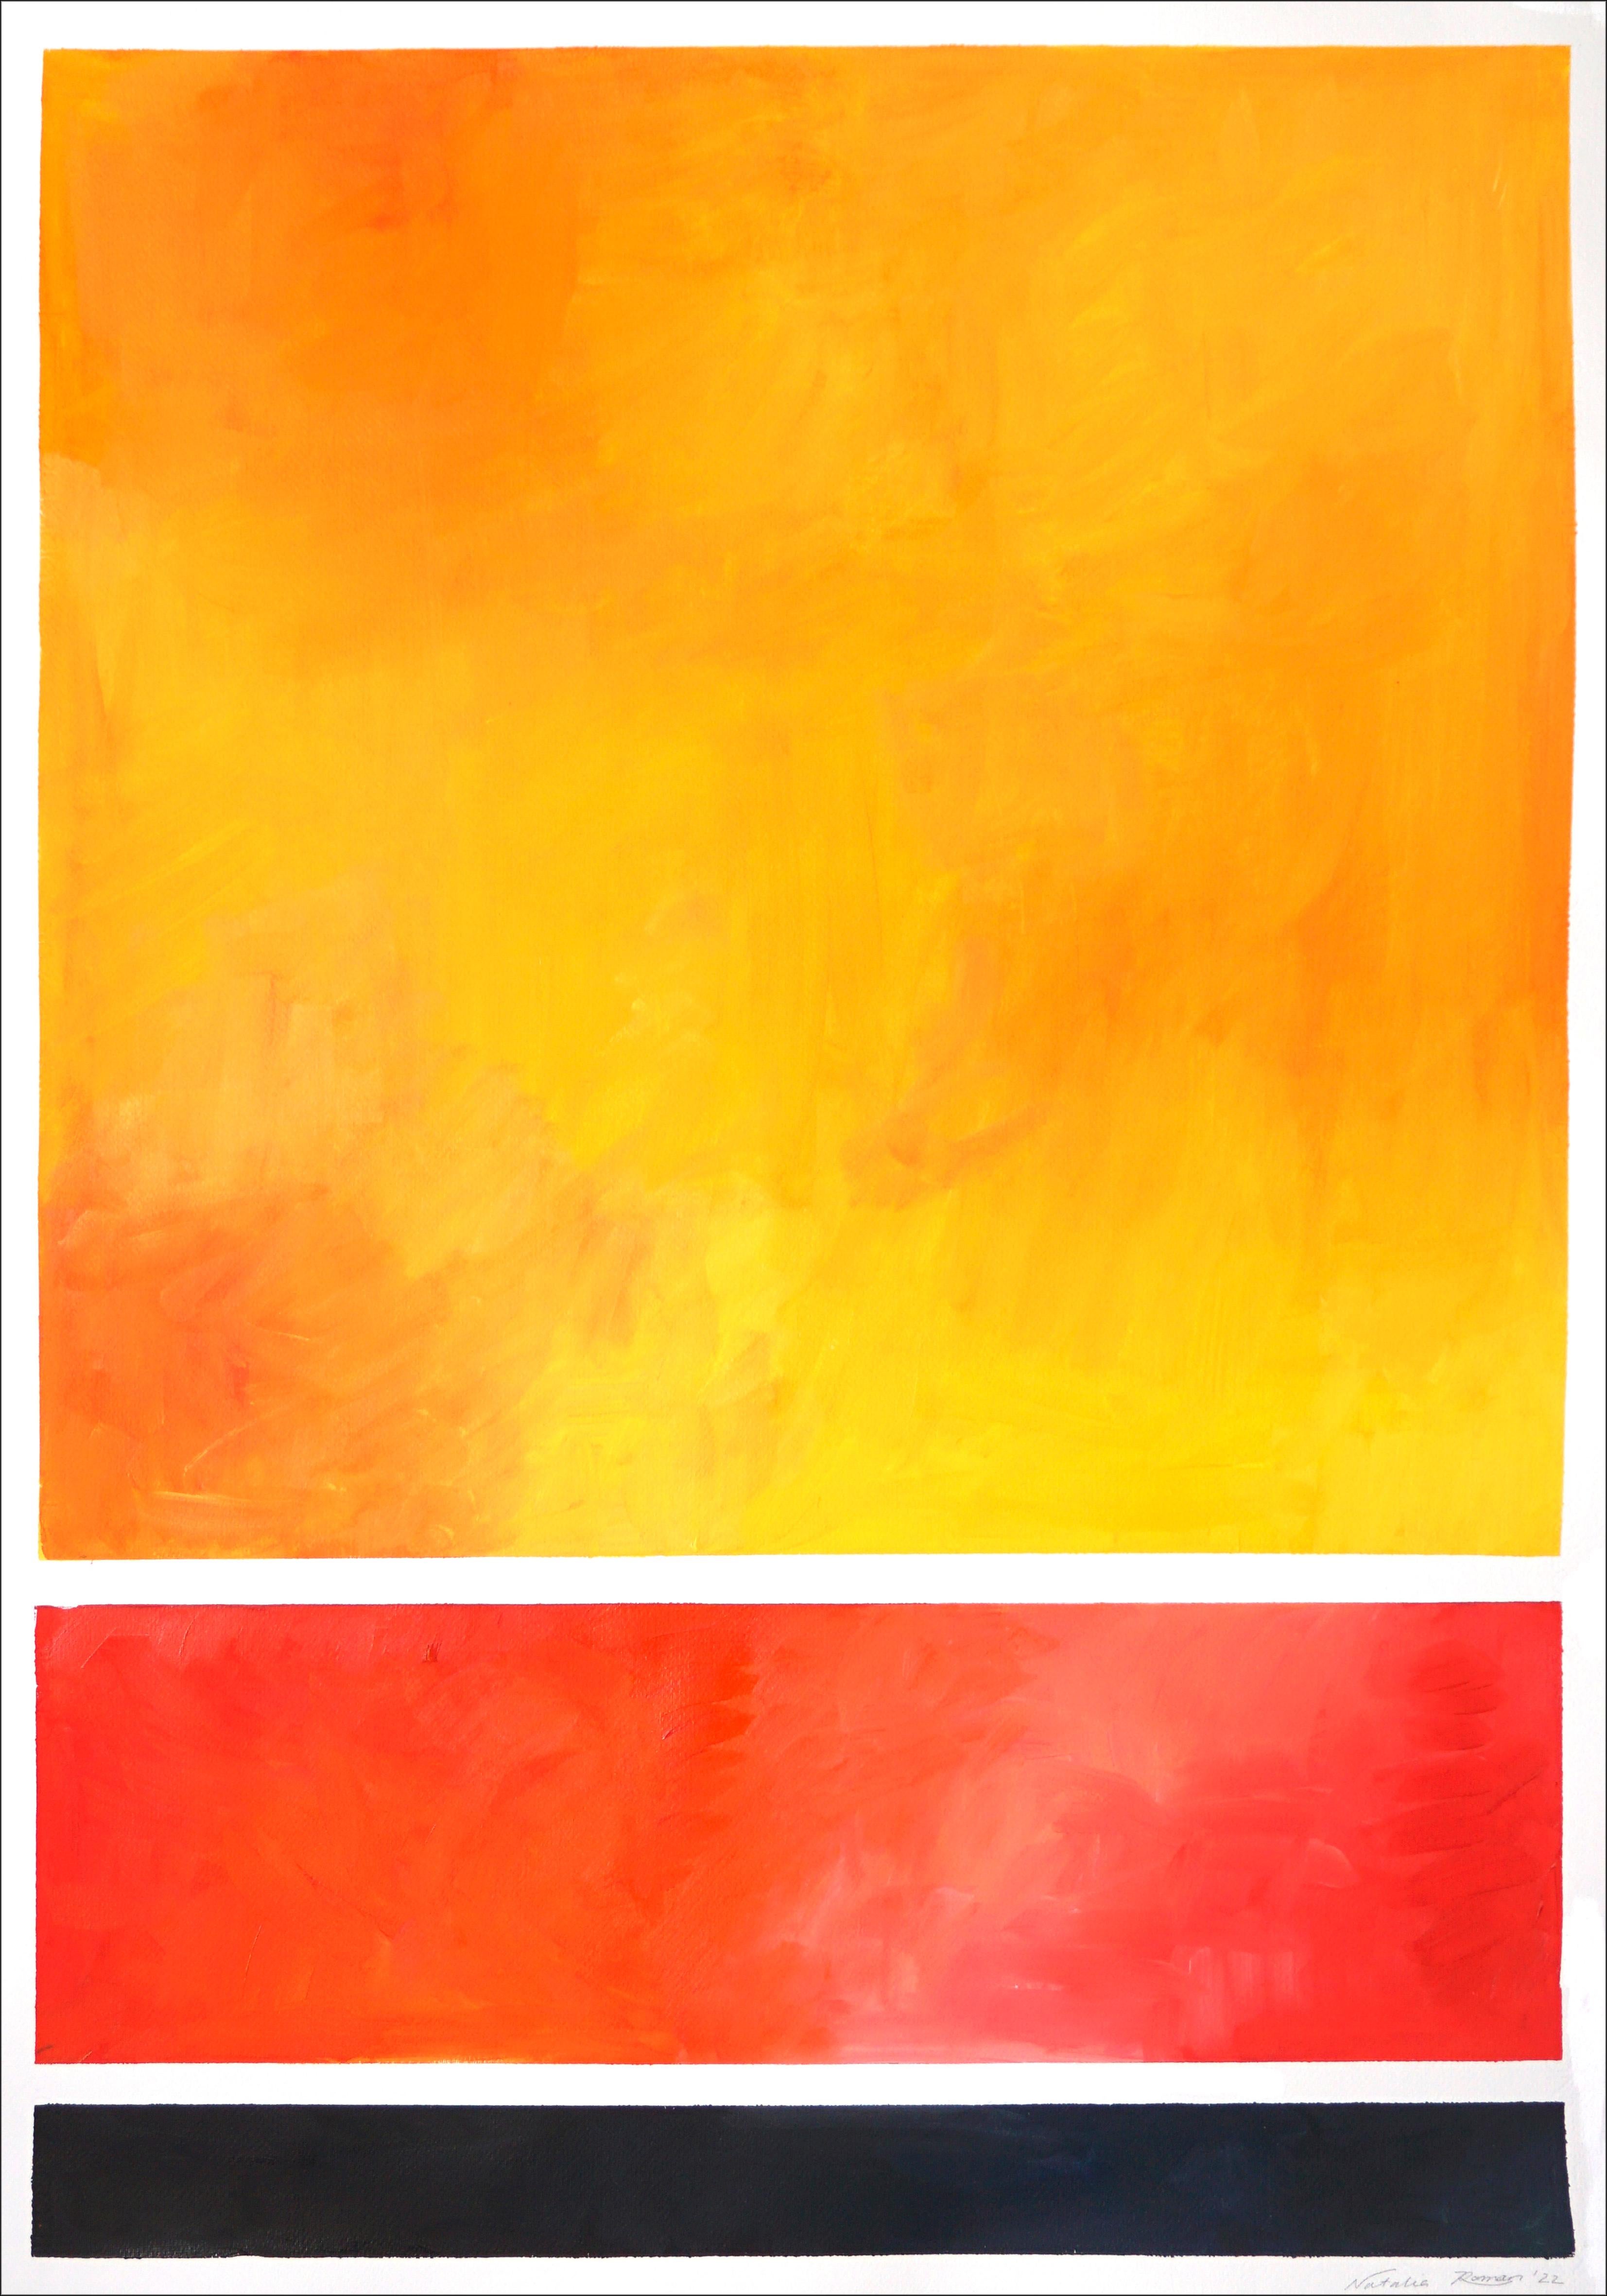 Farbfelder, Farbverlaufsgeometrie in Gelb, Rot und Schwarz, vertikal abstrakt